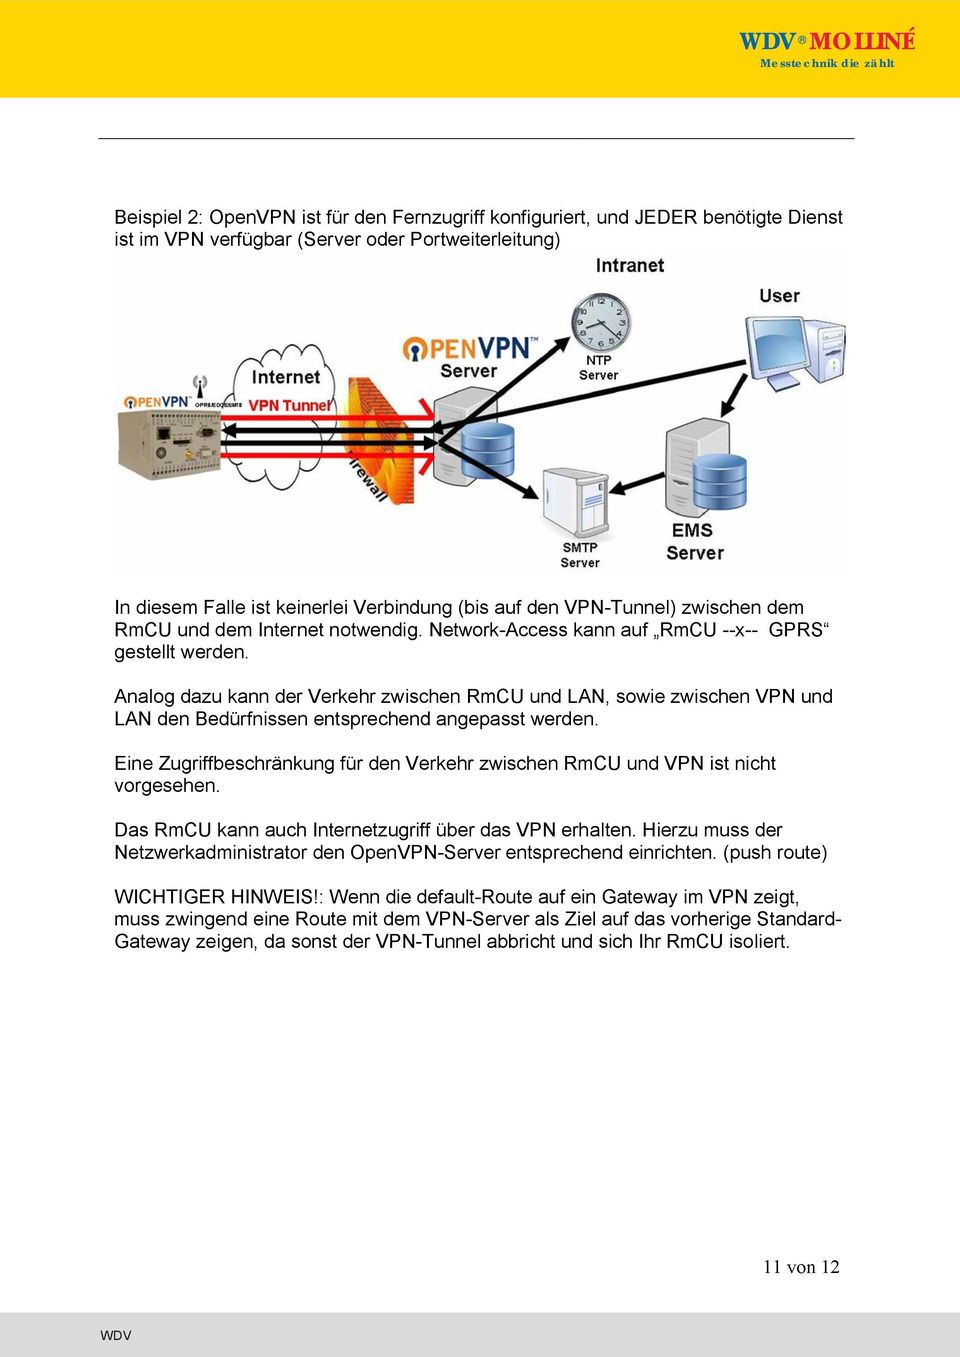 Analog dazu kann der Verkehr zwischen RmCU und LAN, sowie zwischen VPN und LAN den Bedürfnissen entsprechend angepasst werden.